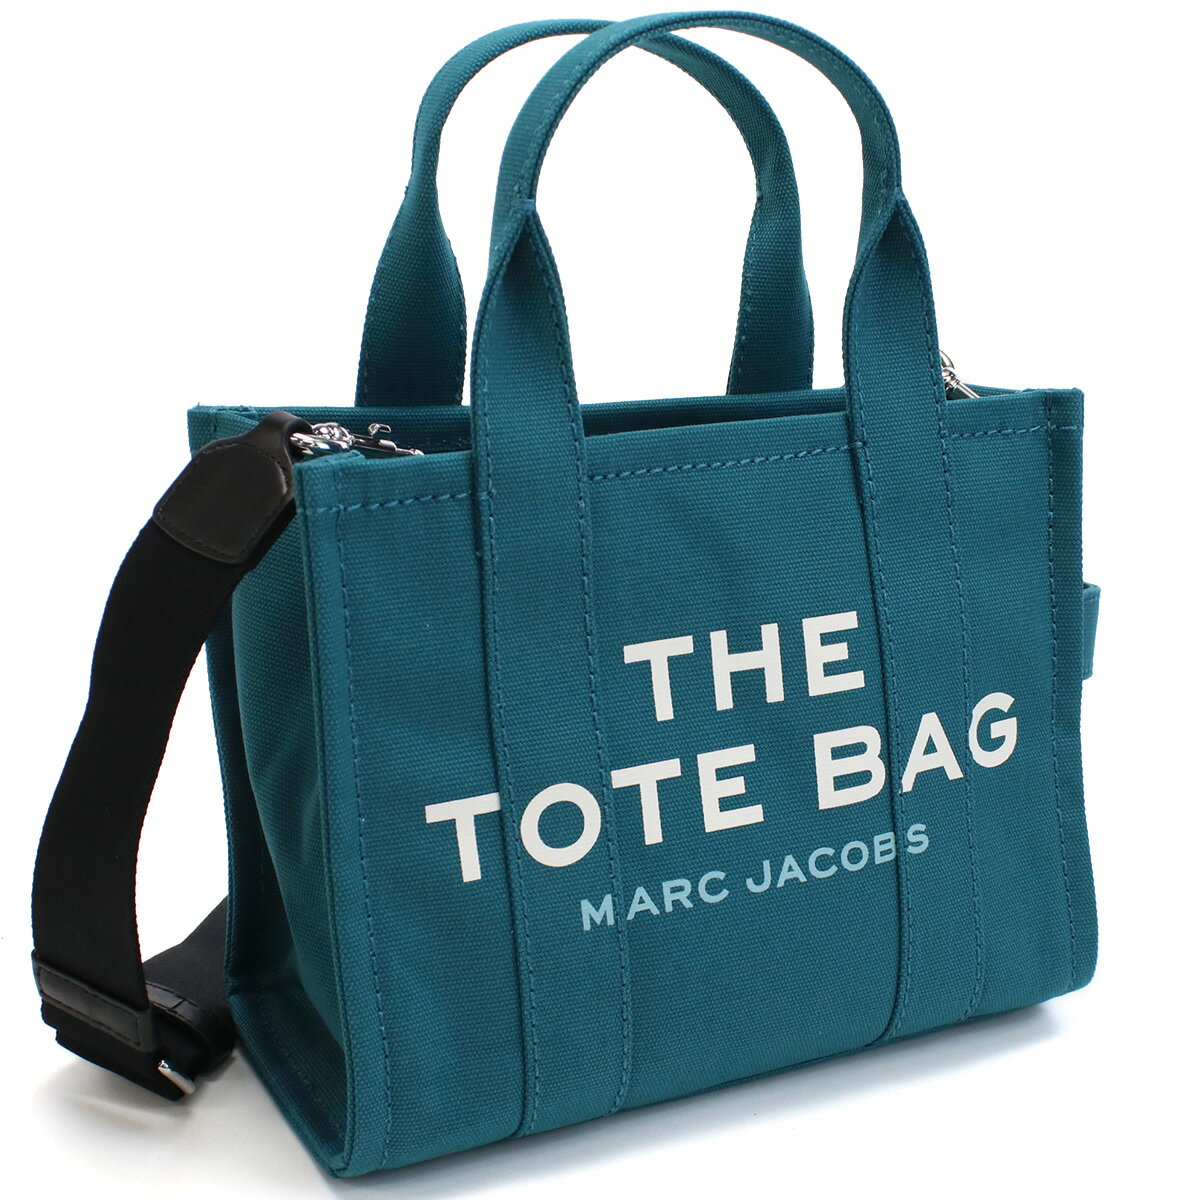 マークジェイコブス MARC JACOBS THE MINI TOTE ザトート トートバッグM0016493 443HARBOR BLUE ブルー系 bag-01 tcld-bhsn